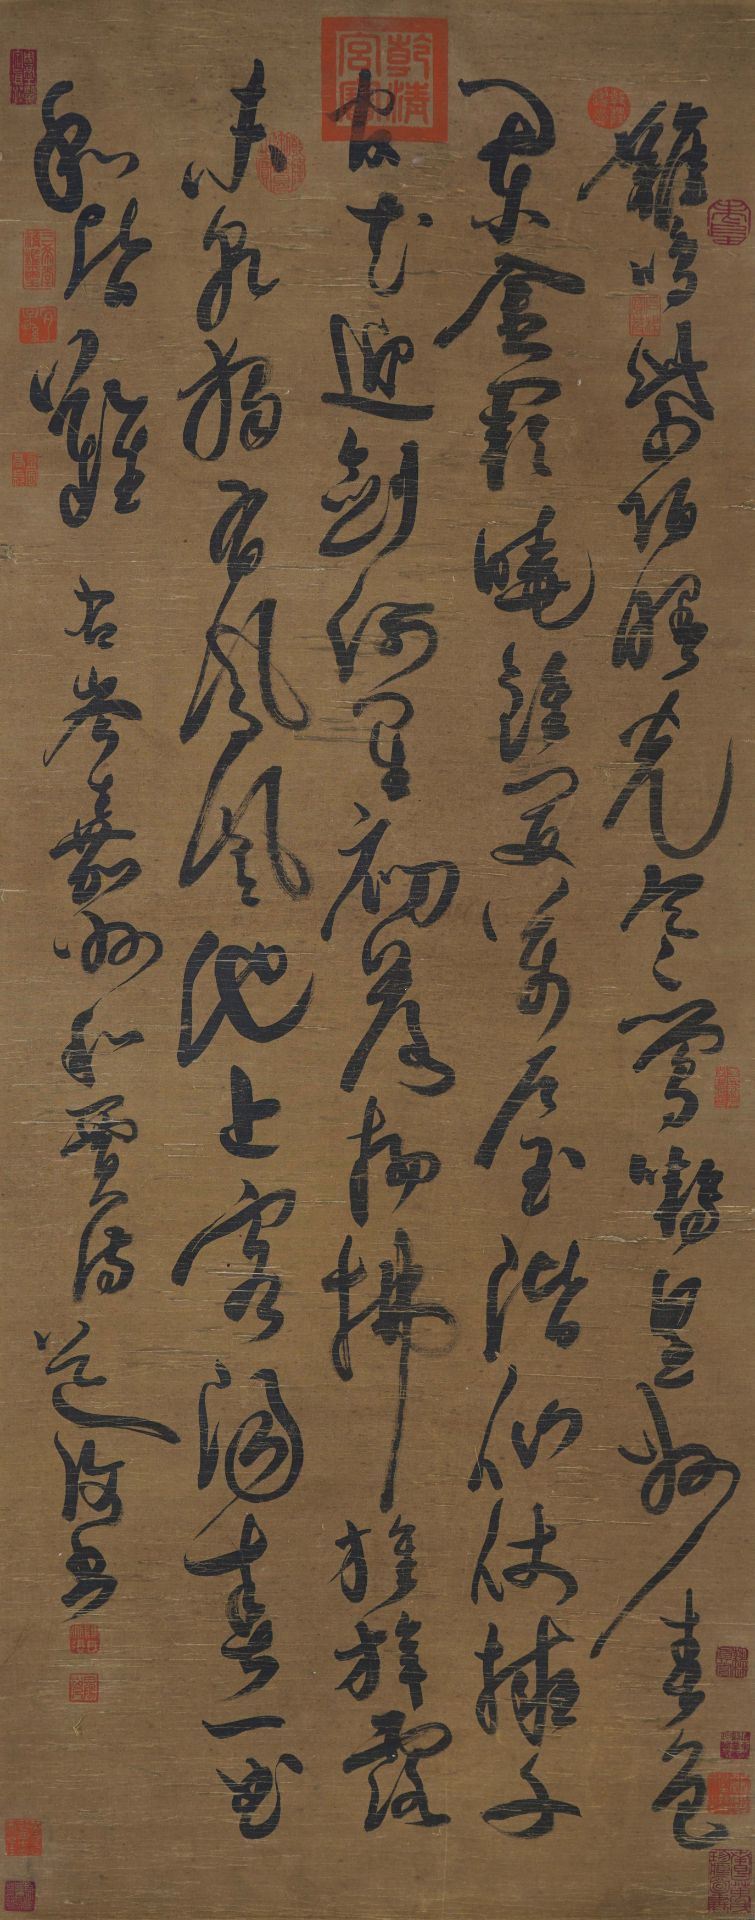 陳淳 A Chinese Scroll Calligraphy By Chen Chun - Image 2 of 14